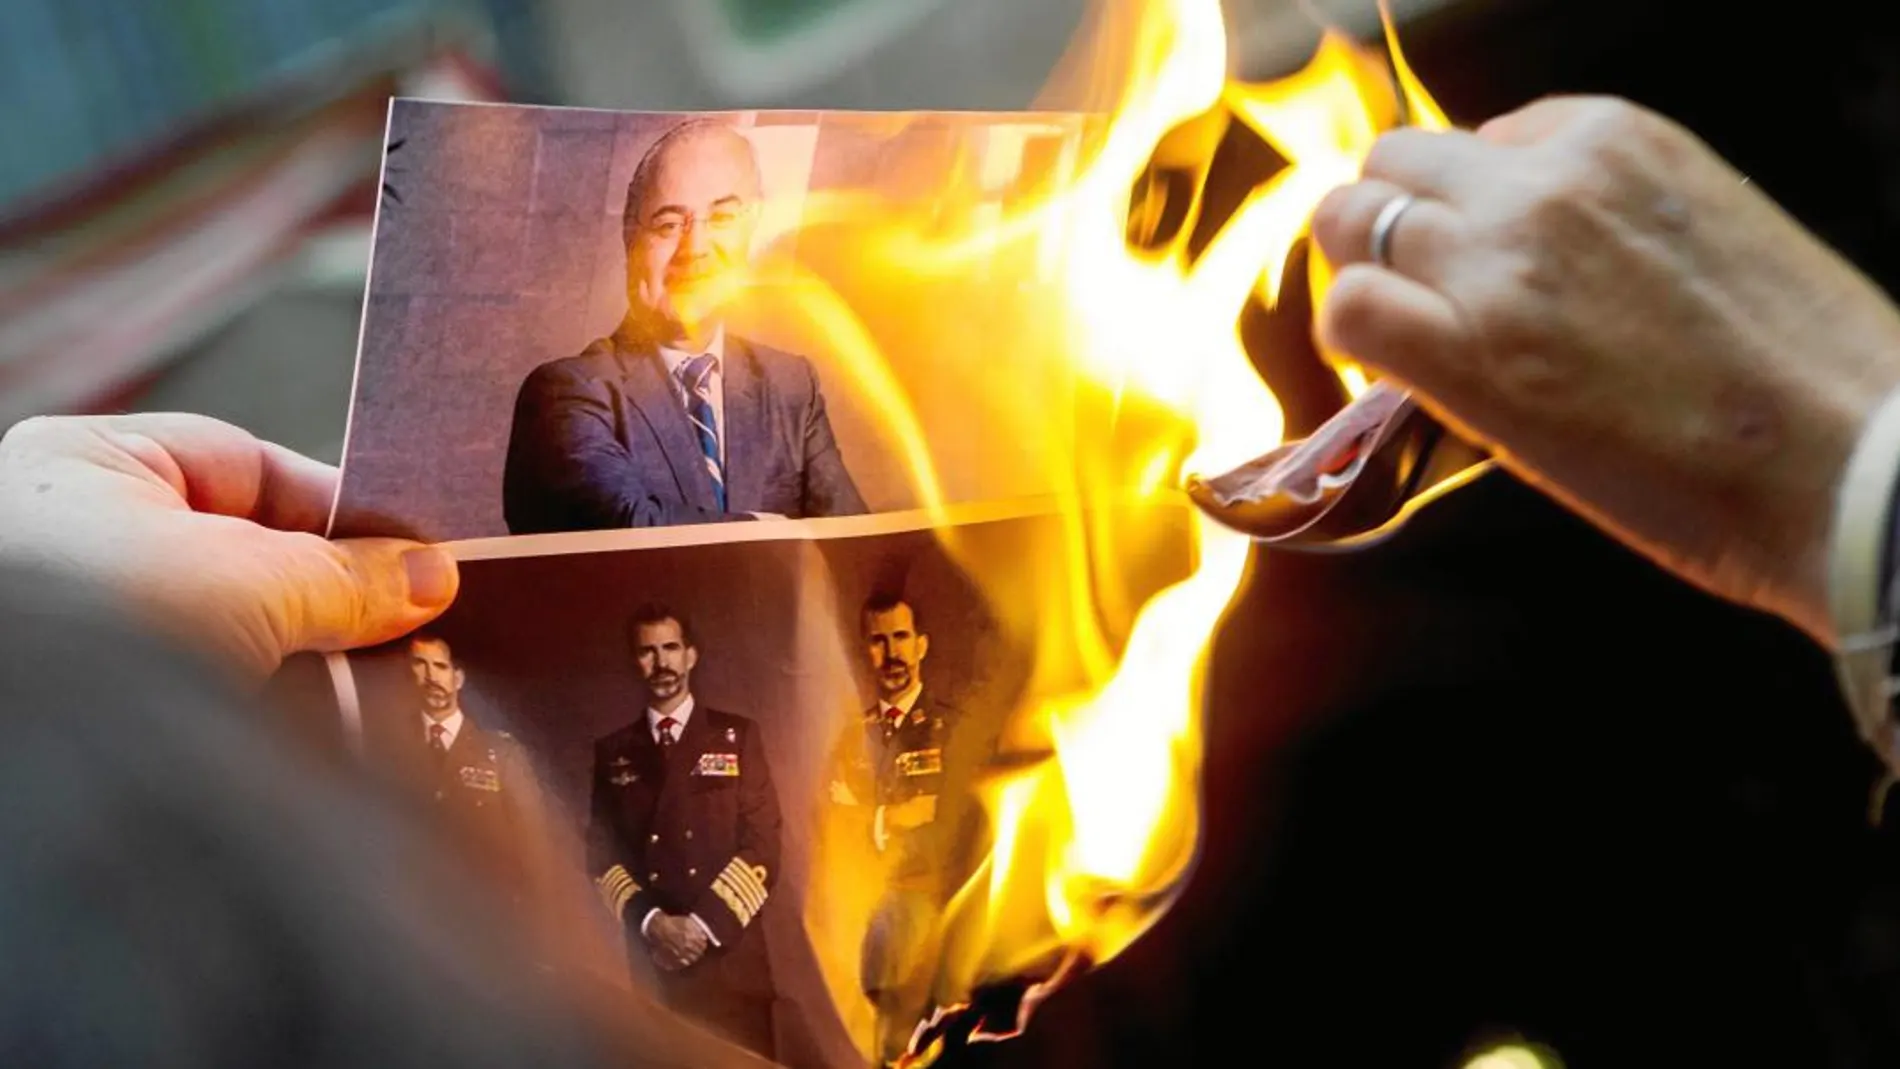 Los CDR queman ayer imágenes del Rey y del juez Llarena en Barcelona